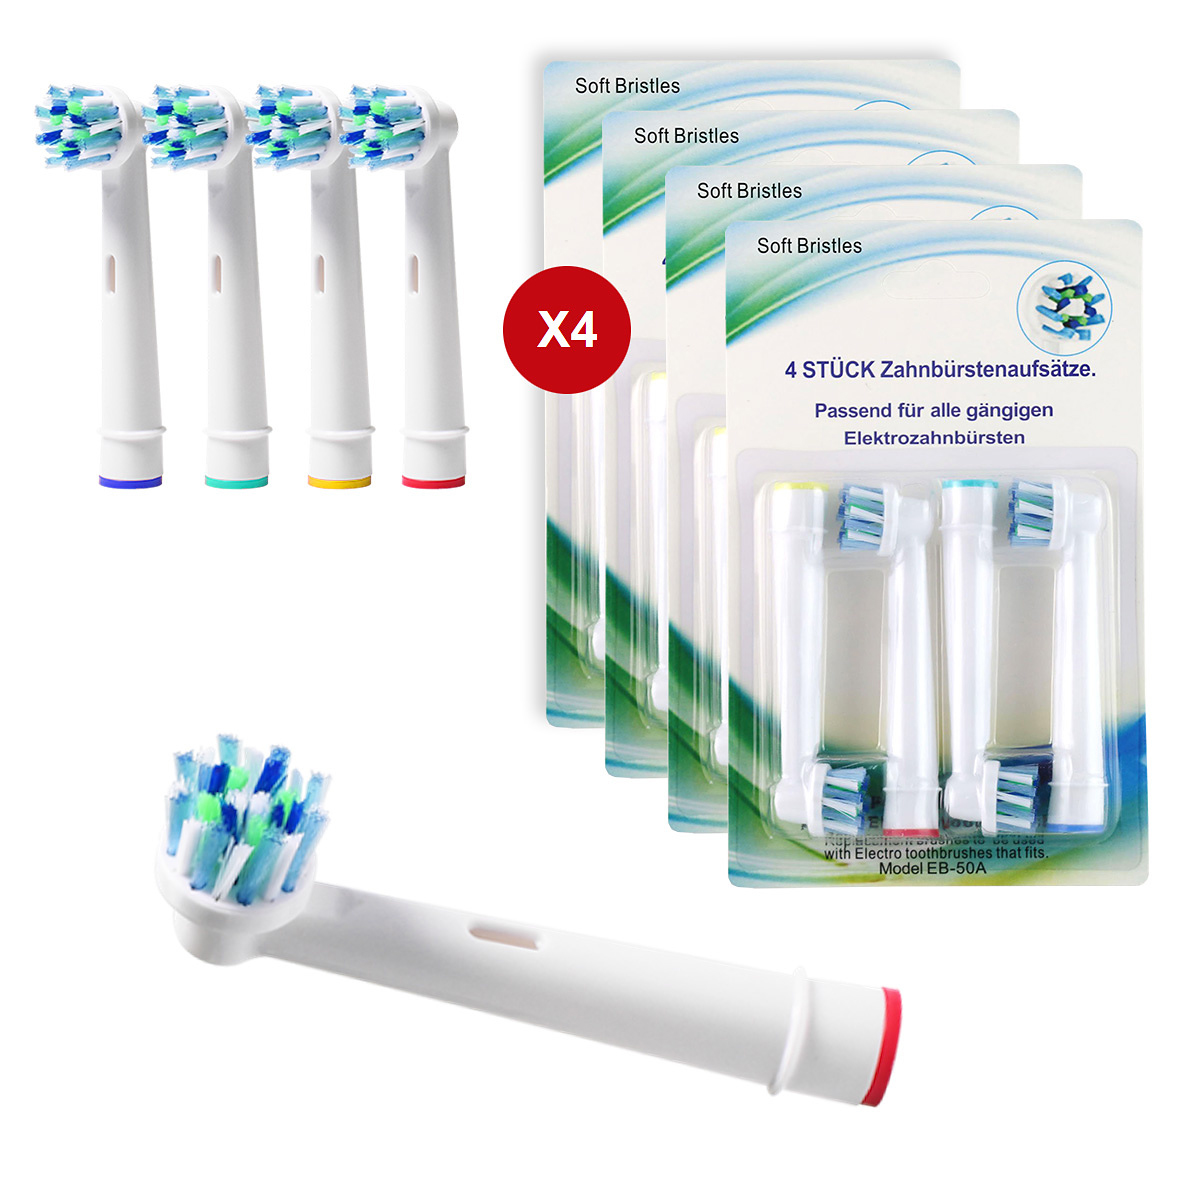 16-pack Oral-B kompatibla tandborsthuvuden EB-50A, Cross Action